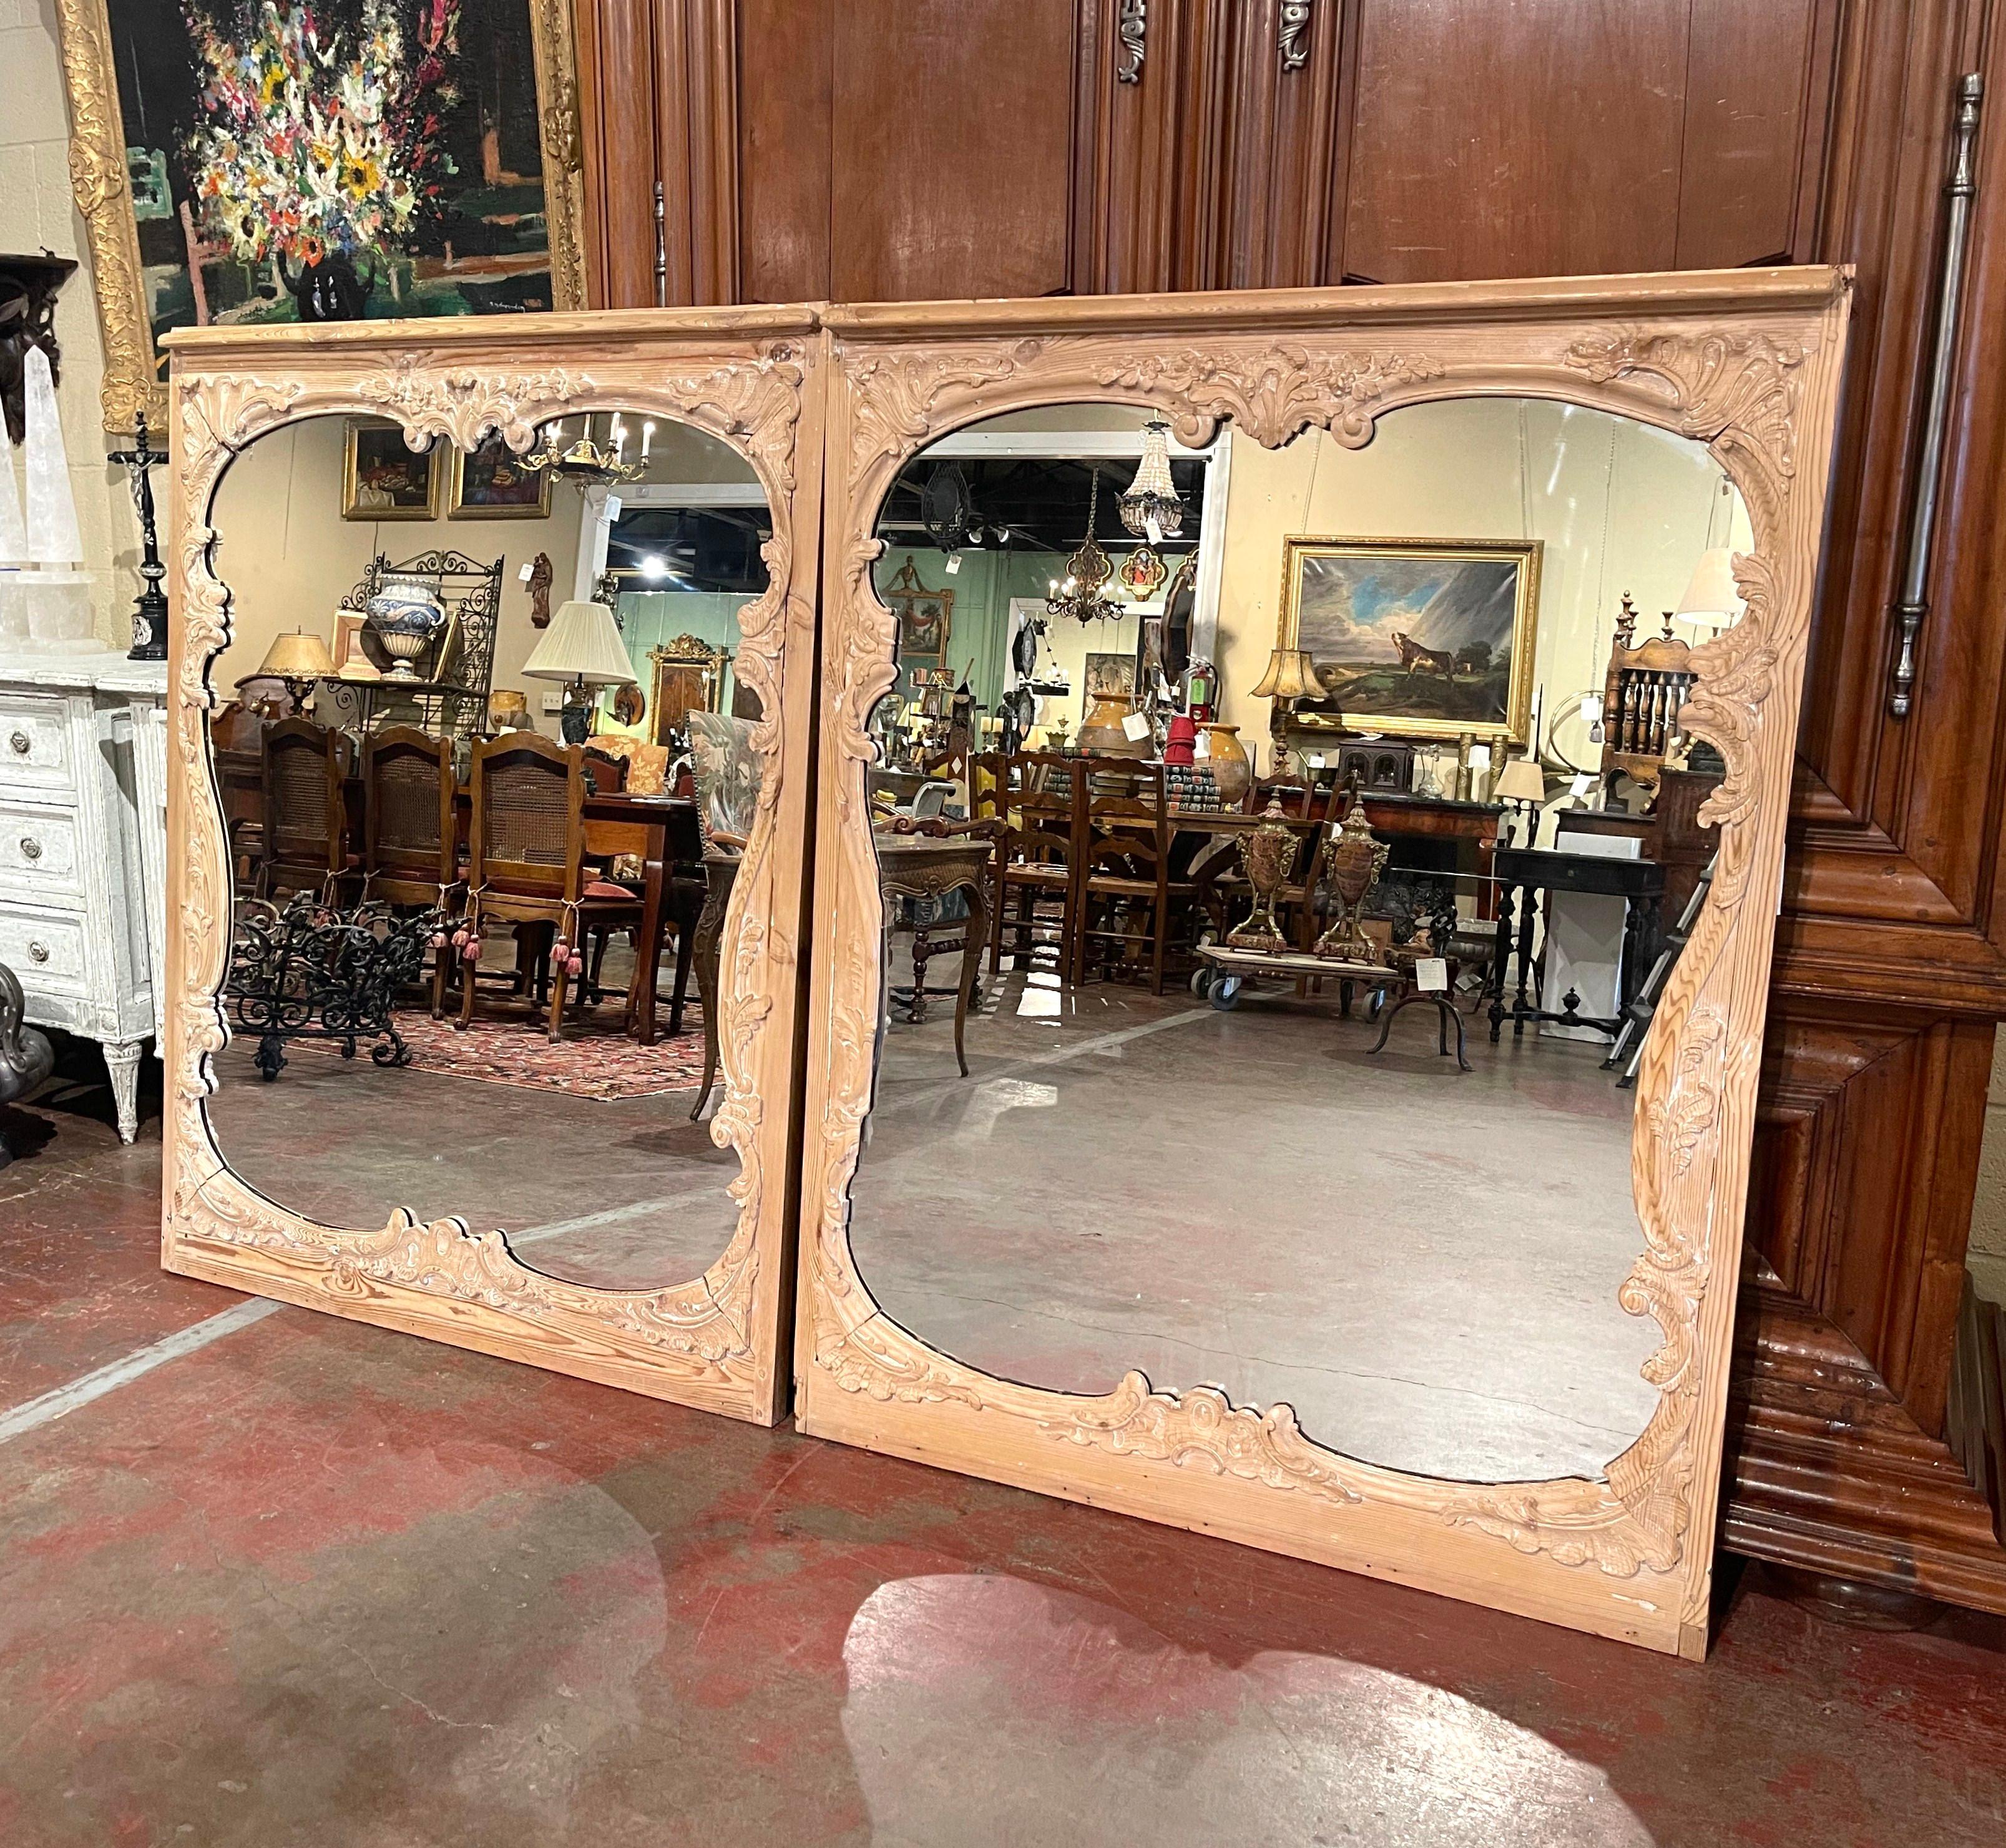 Placez ces élégants miroirs anciens au-dessus d'une paire de consoles ou de coffres dans l'entrée ! Fabriqué en France vers 1880 et en bois de pin, chaque miroir mural rectangulaire présente des motifs floraux et de feuilles sculptés à la main. Les